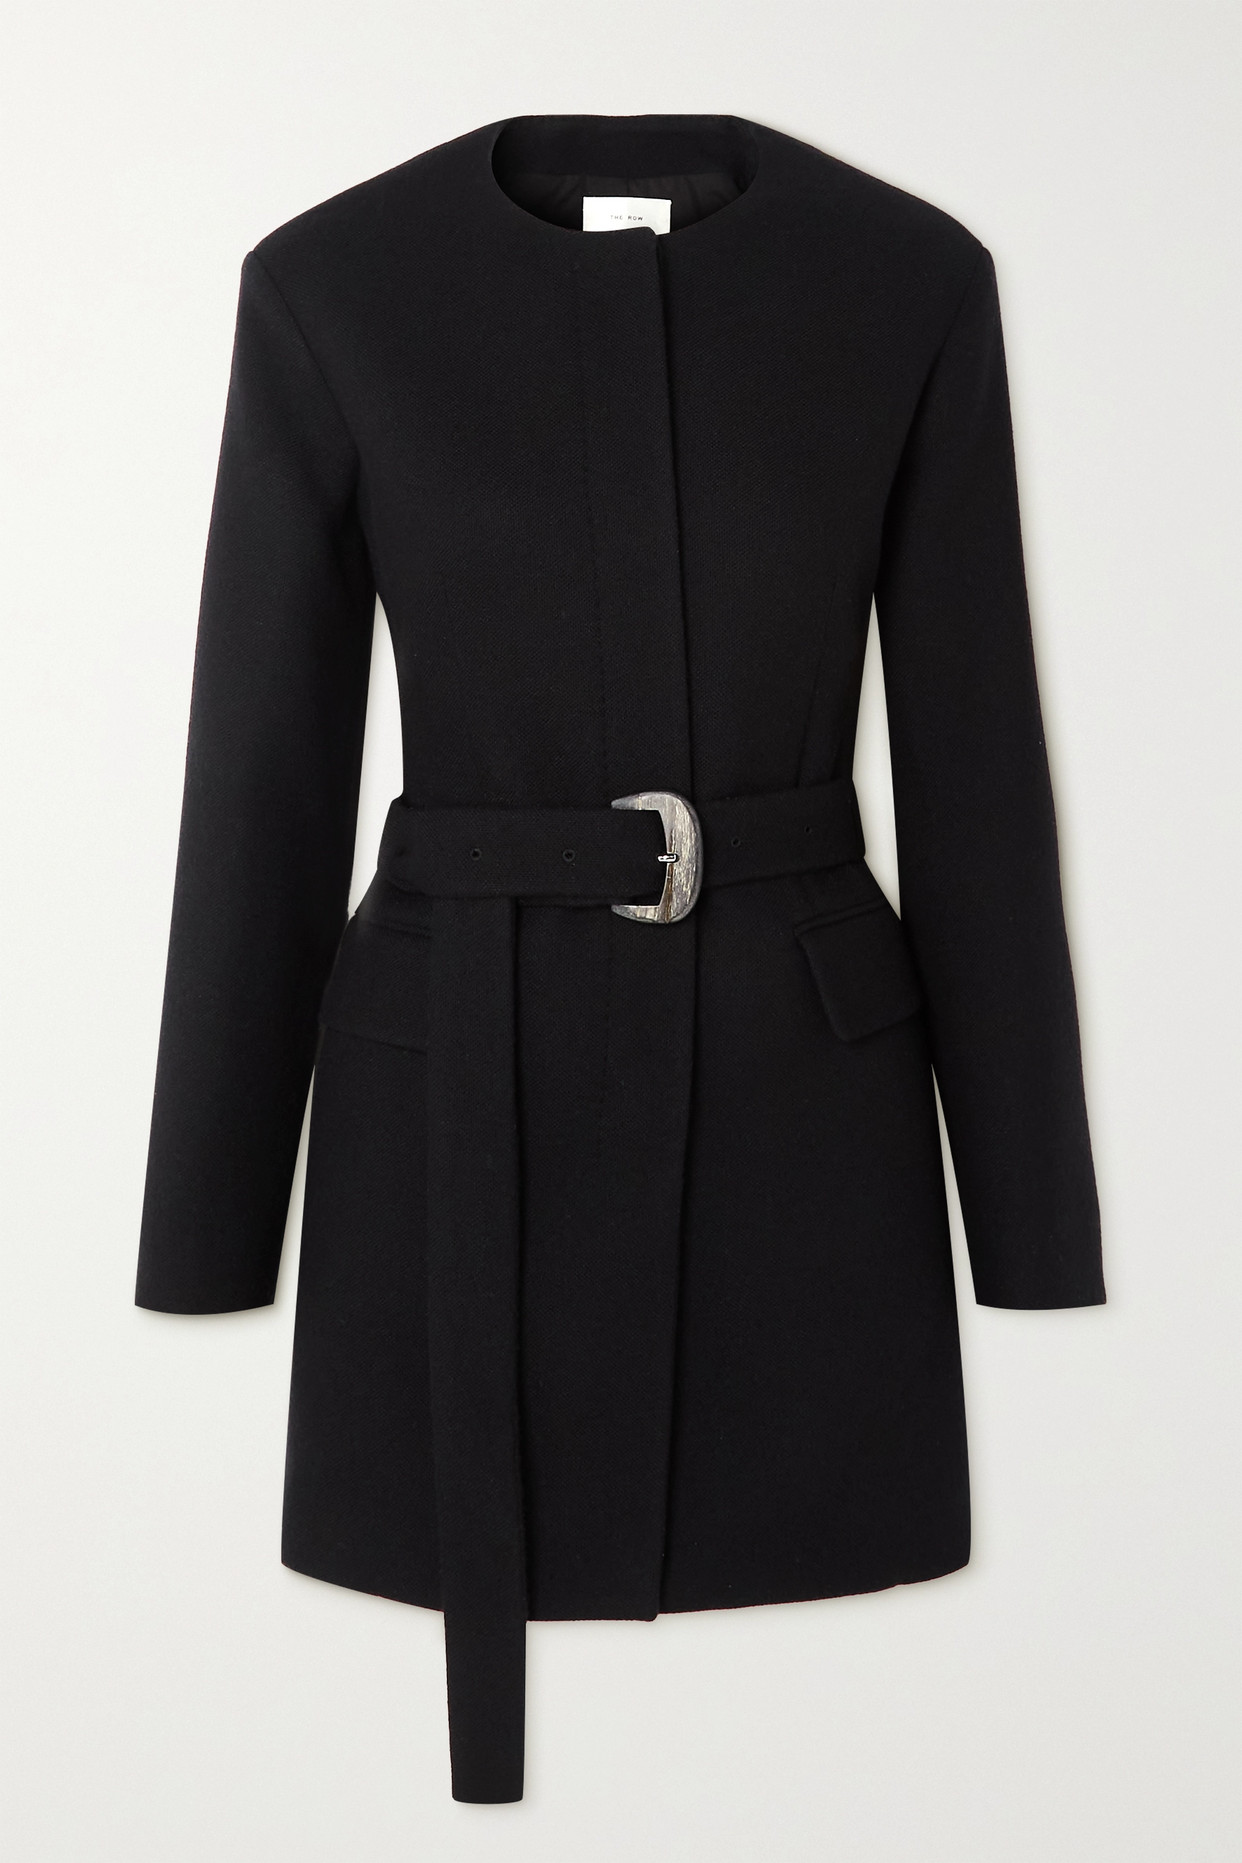 더로우 여성 Monacci 벨트 캐시미어 재킷 - 블랙 - US8